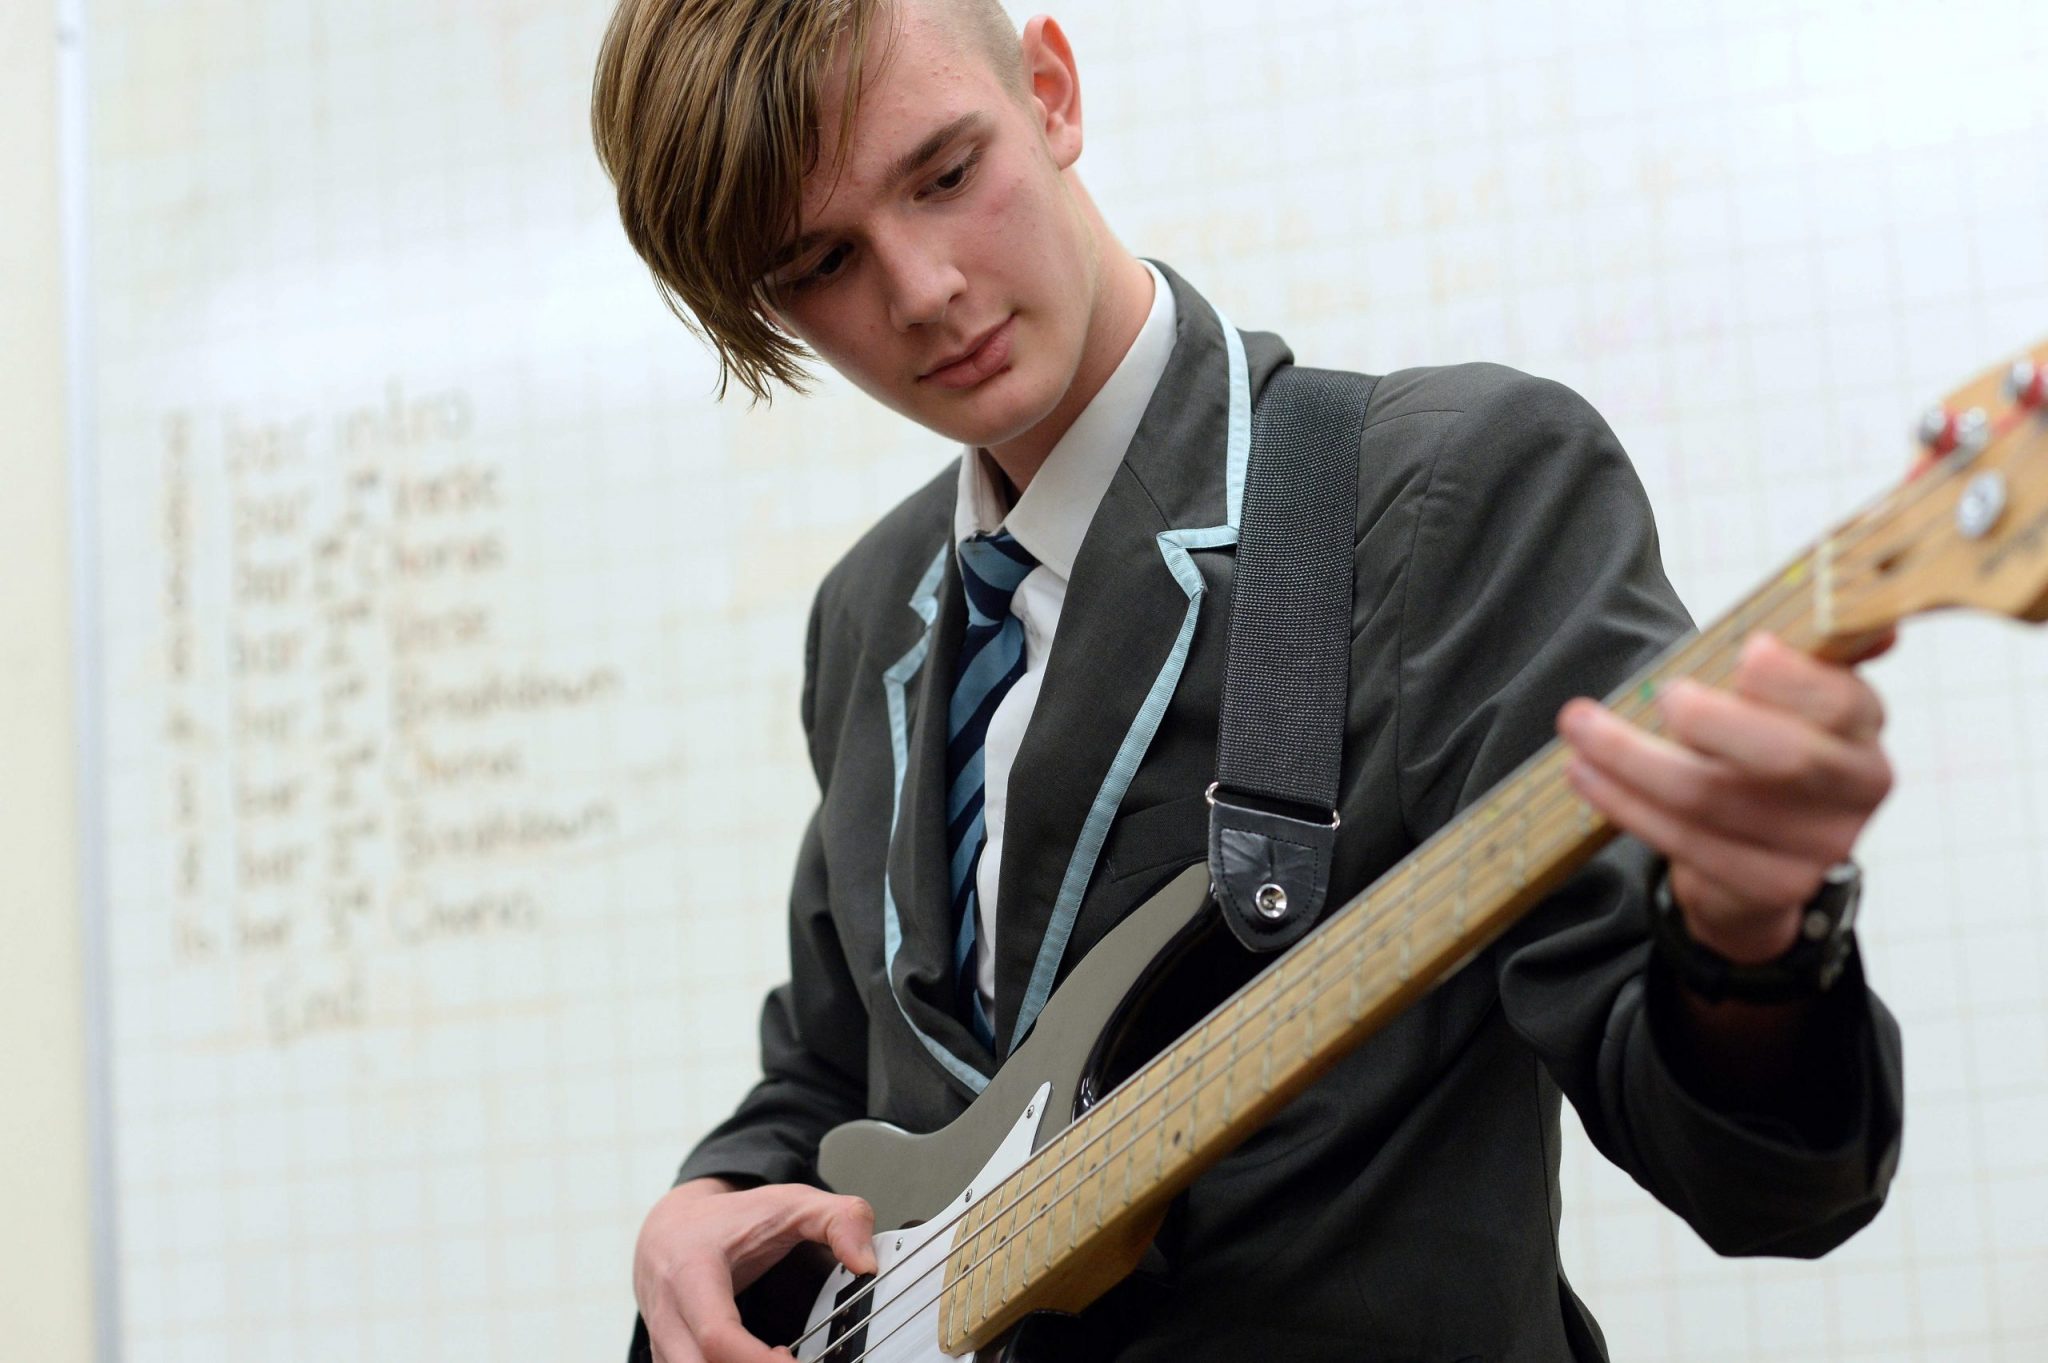 A young man plays bass guitar